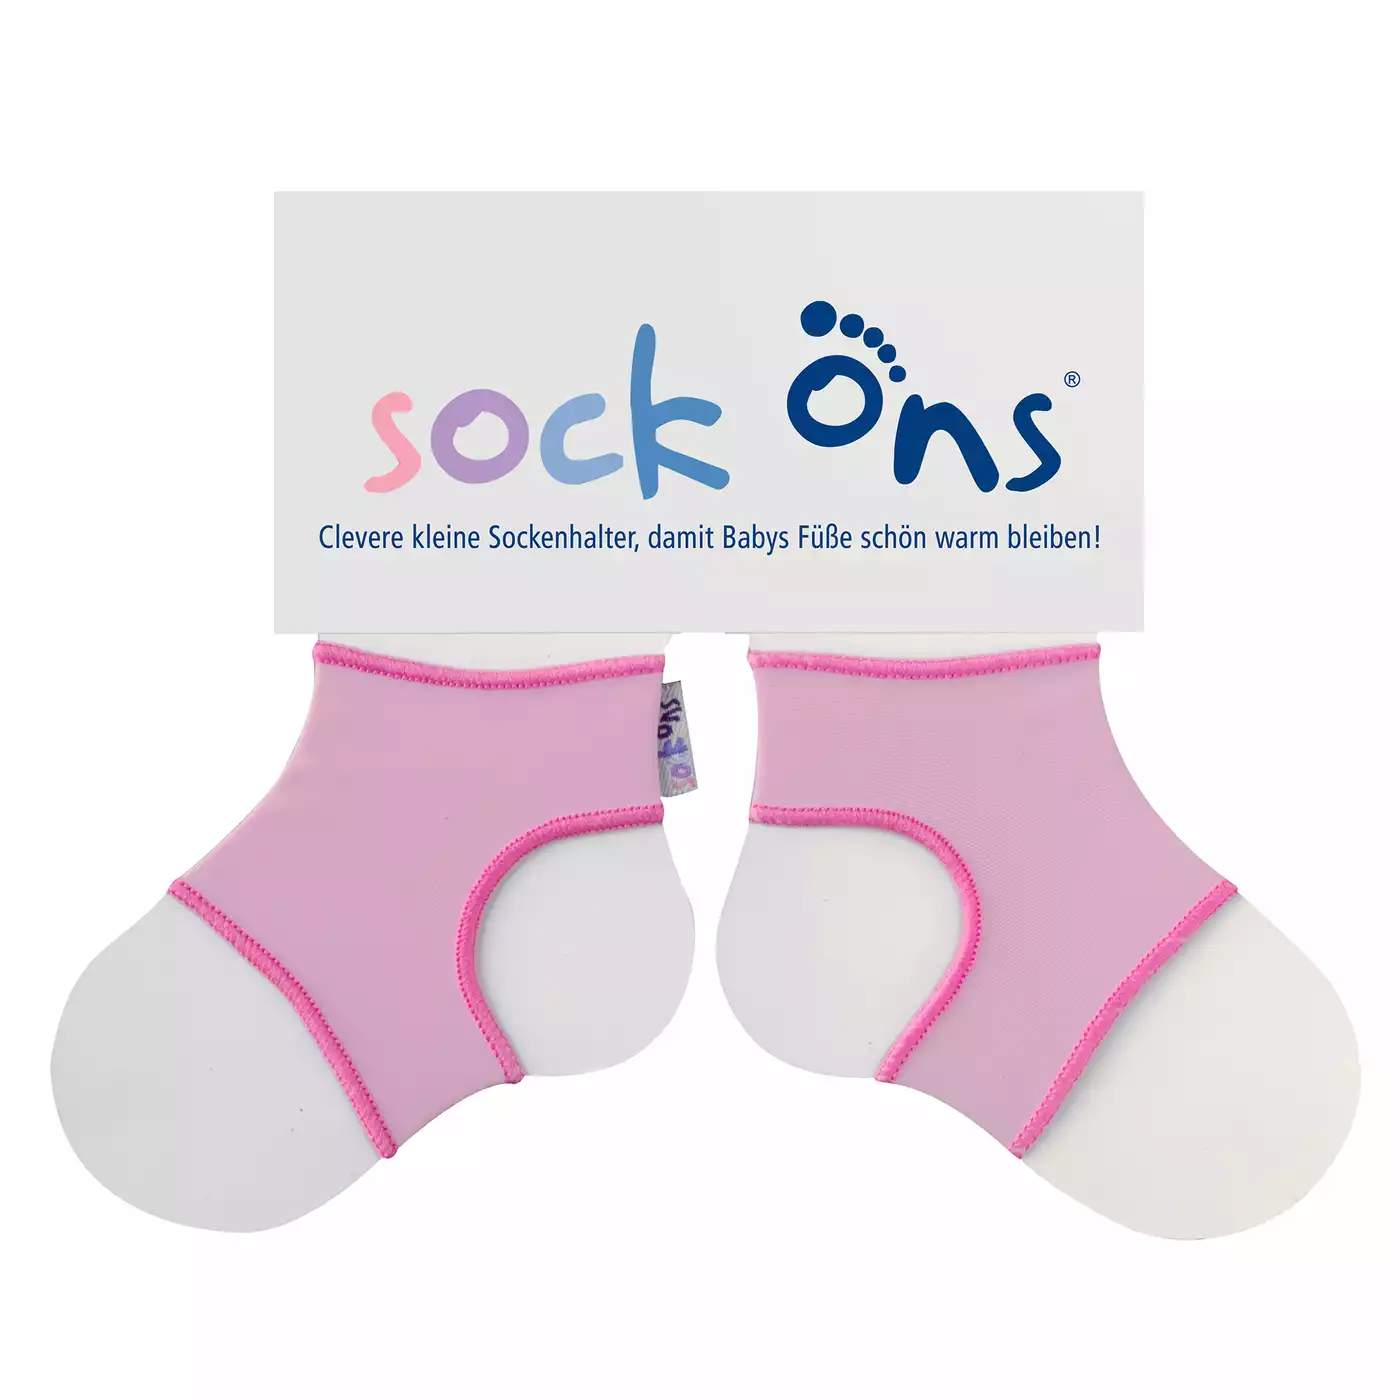 Sock Ons Größe L (6-12 Monate) FUNNY Pink 2000564949706 1